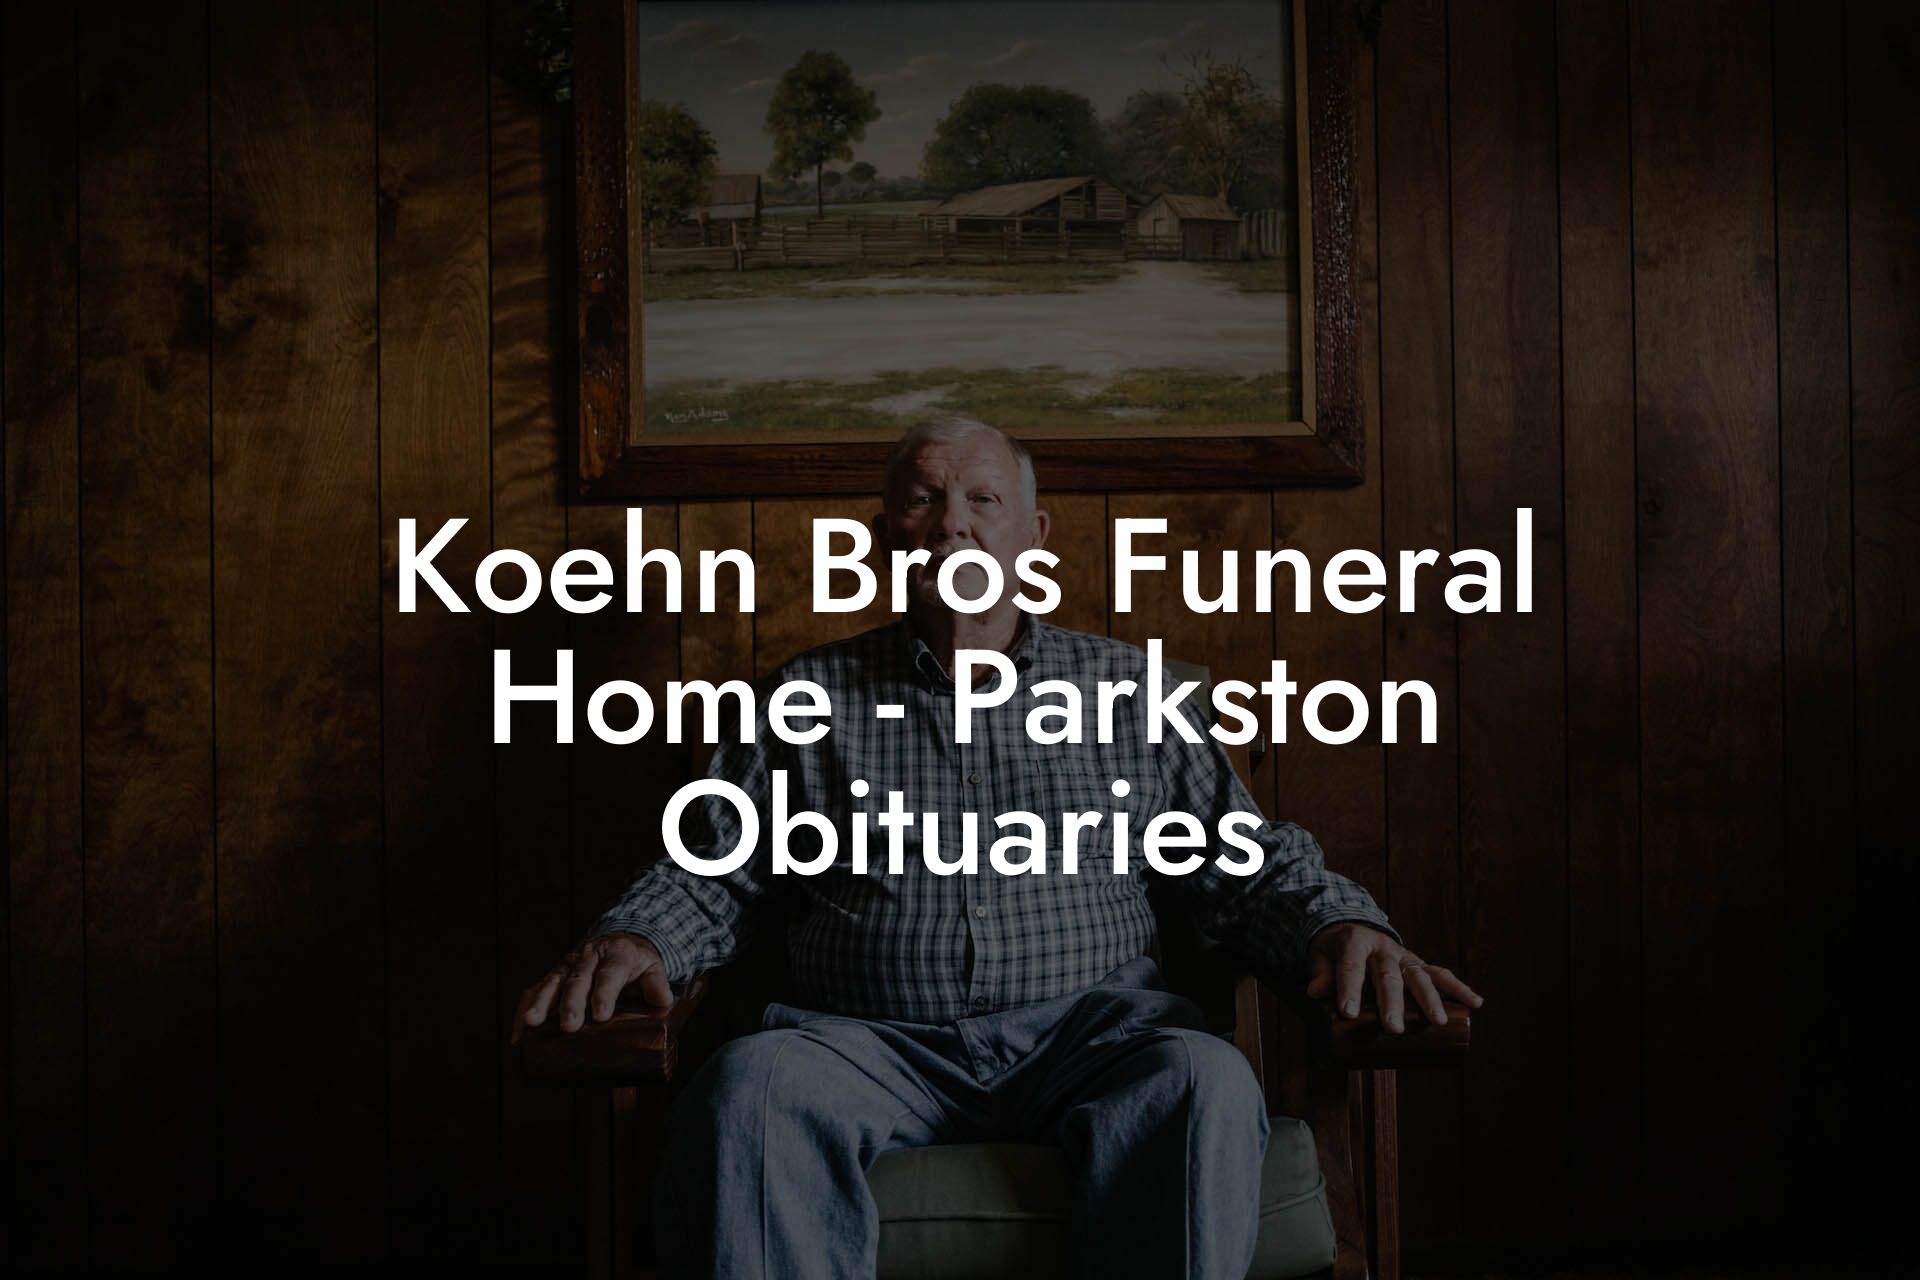 Koehn Bros Funeral Home - Parkston Obituaries